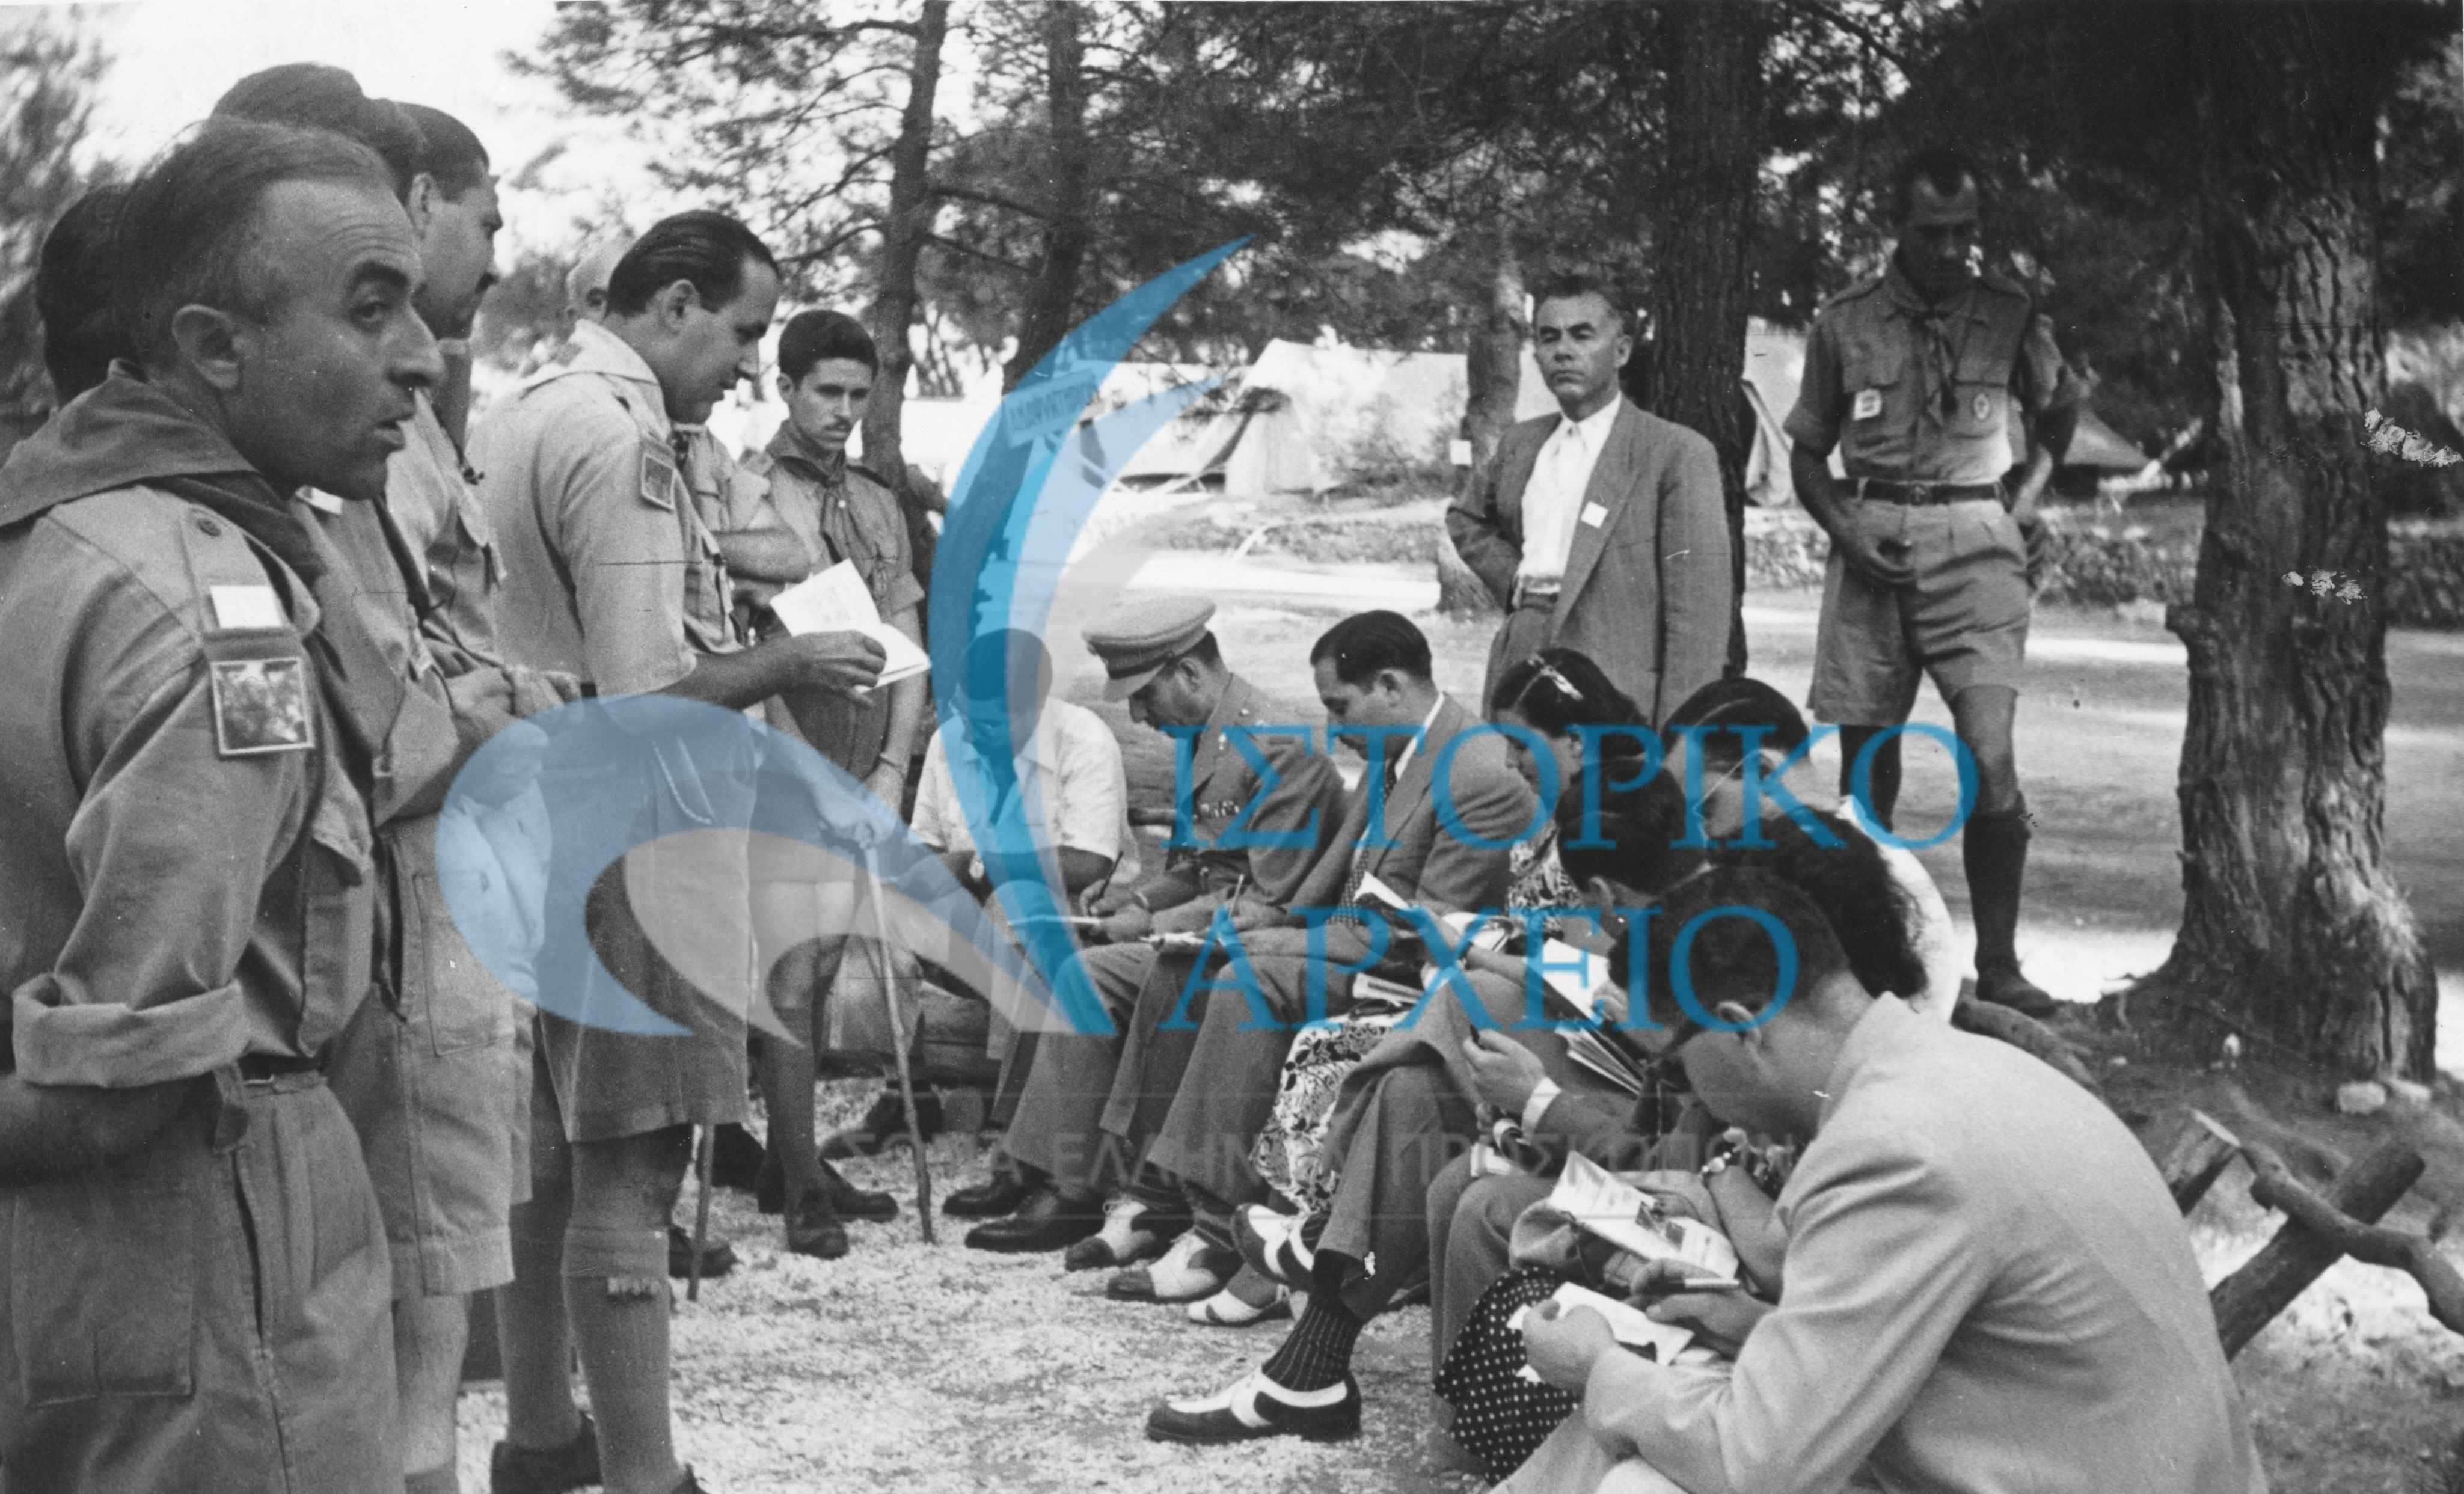 Ο Δημήτρης Αλεξάτος ομιλεί με εκπροσώπους του τύπου και άλλες αρχές για το 1ο Πανελλήνιο Τζάμπορη στον Διόνυσο Αττικής το 1950.